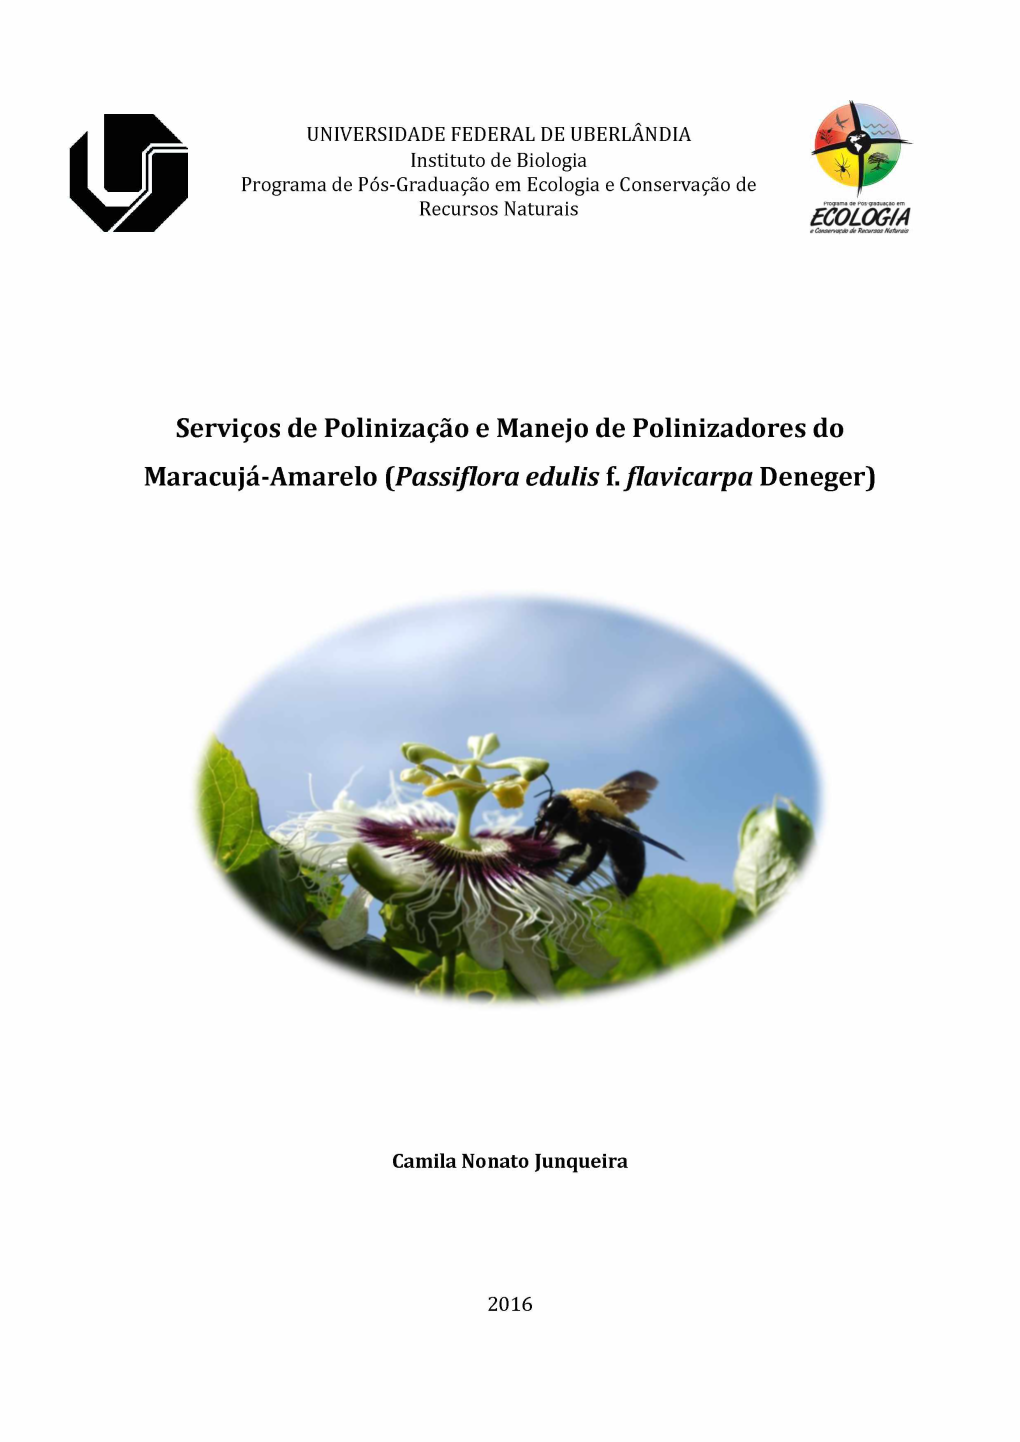 Serviços De Polinização E Manejo De Polinizadores Do Maracujá-Amarelo (Passiflora Edulis F. Flavicarpa Deneger)